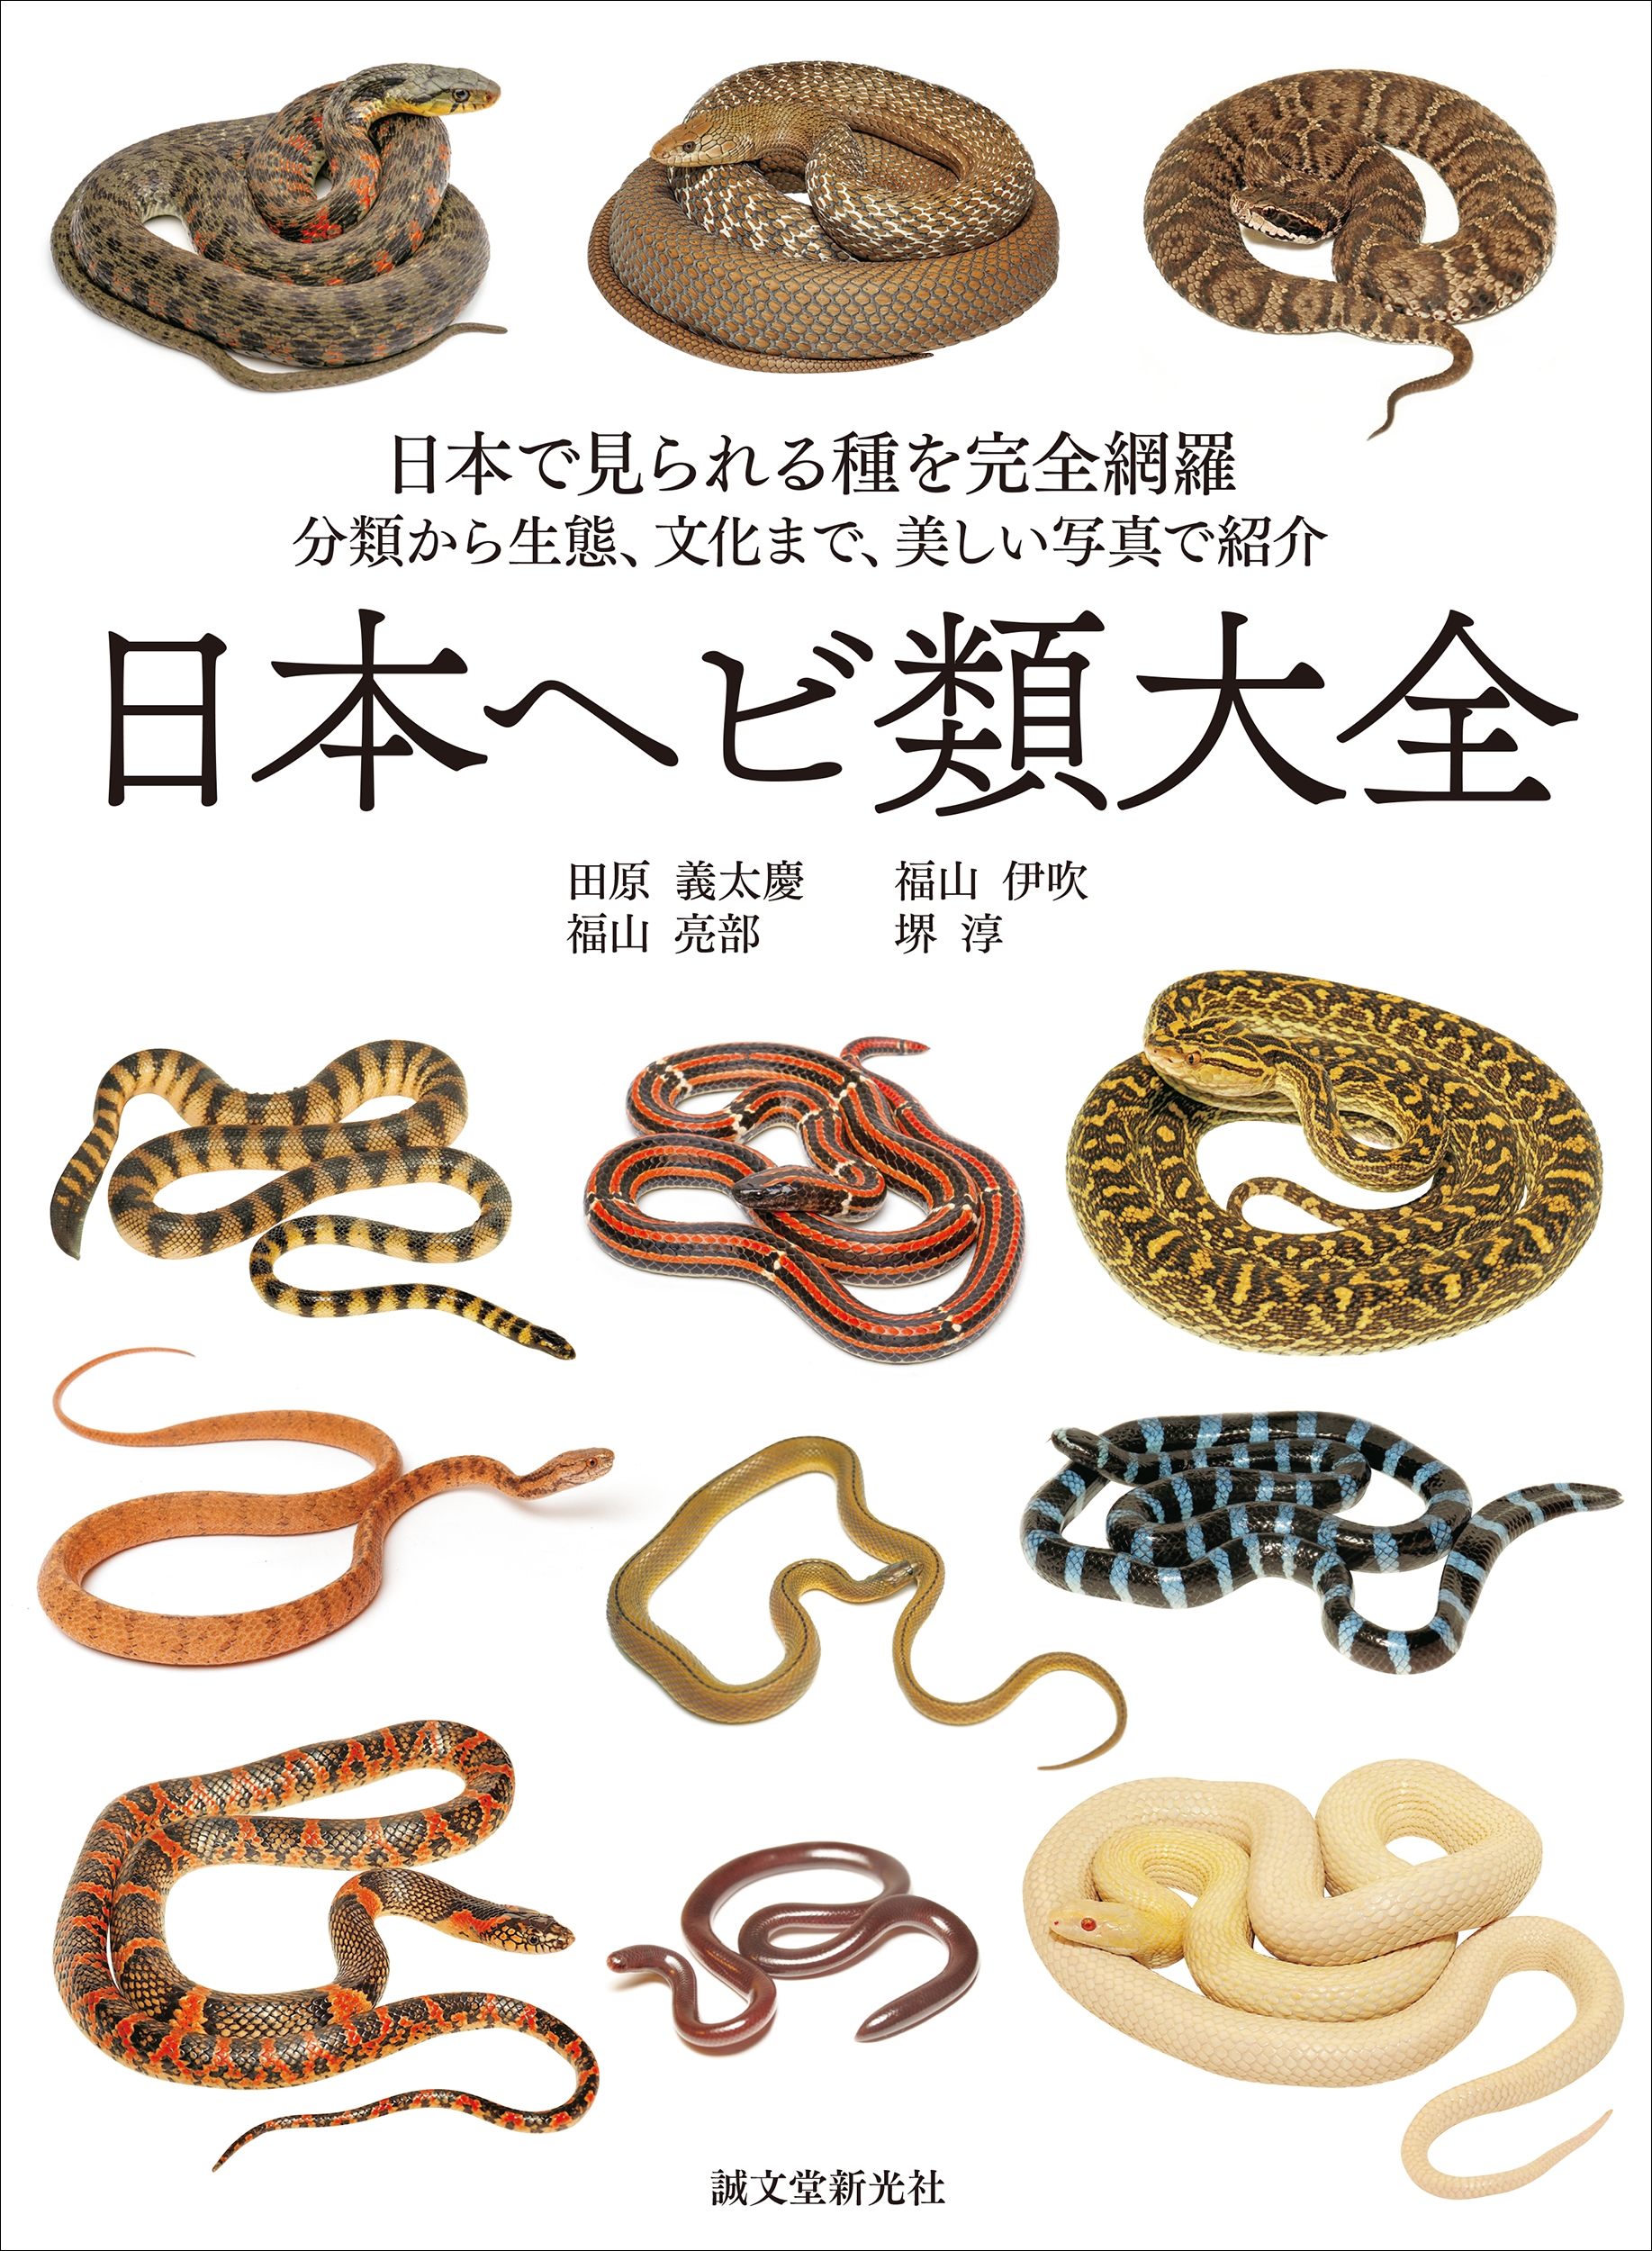 田原義太慶/日本ヘビ類大全 日本で見られる種を完全網羅 分類から生態、文化まで、美しい写真で紹介